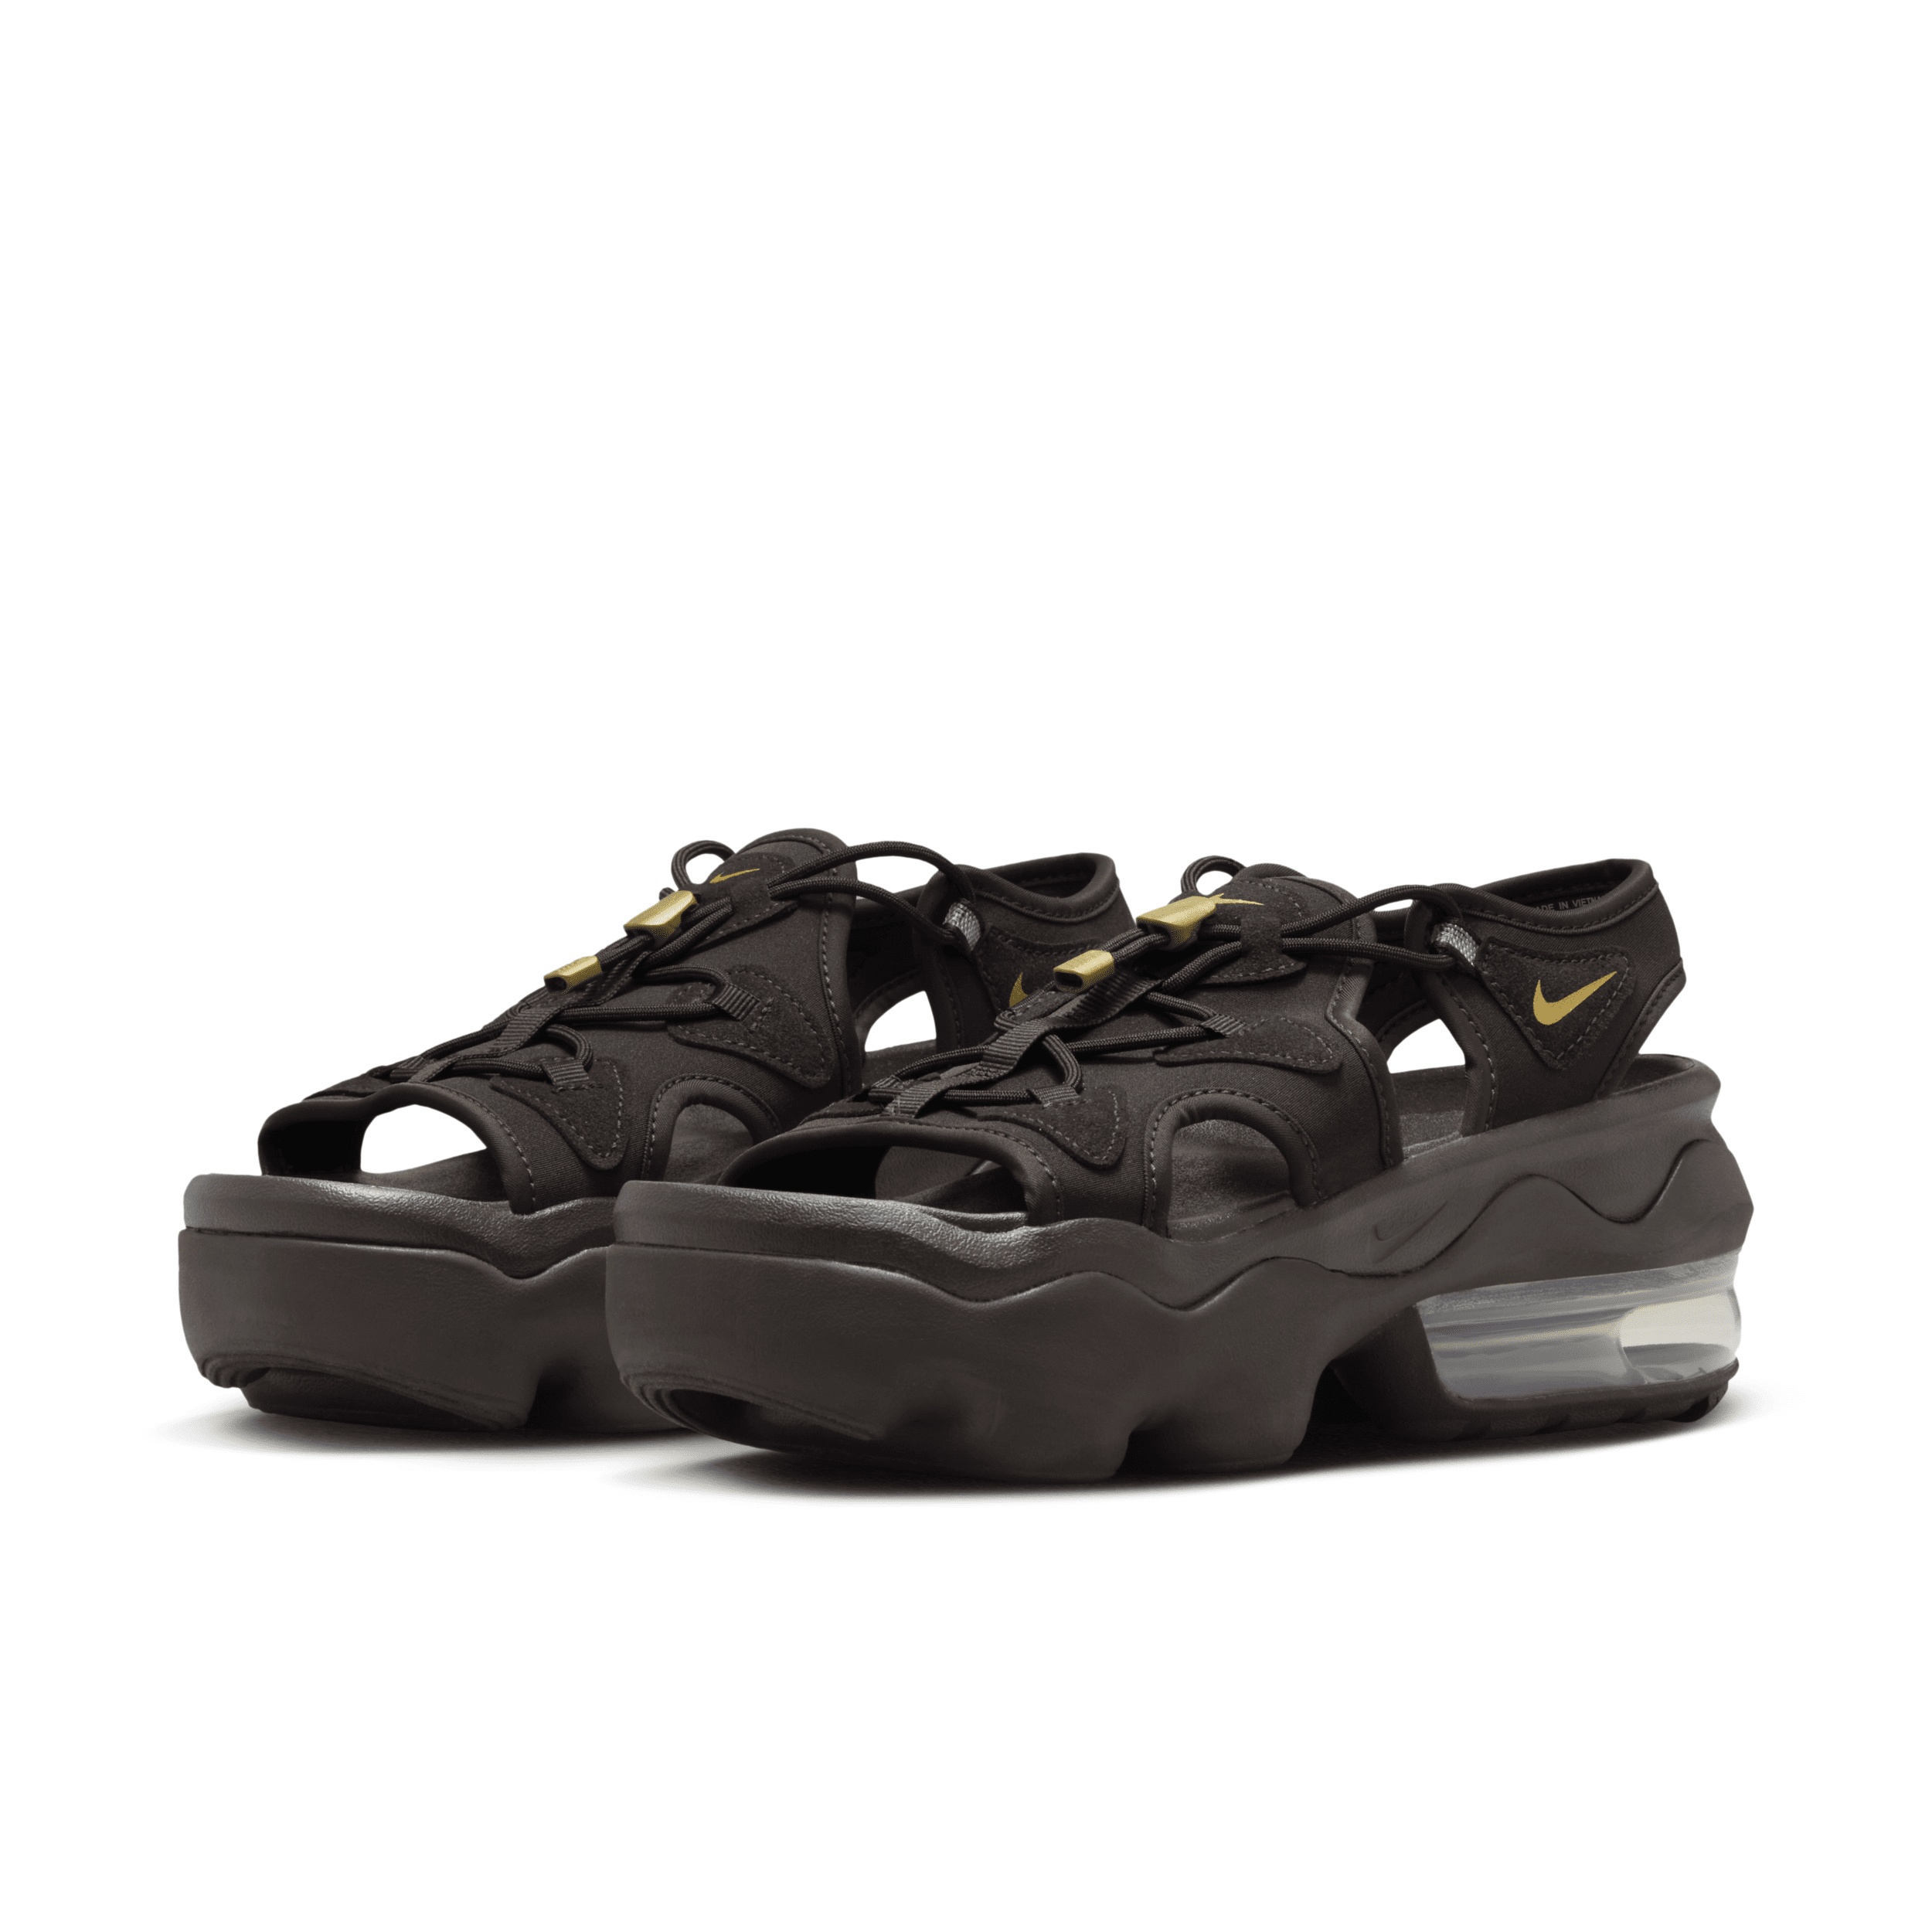 Nike Women's Air Max Koko Sandals - 5